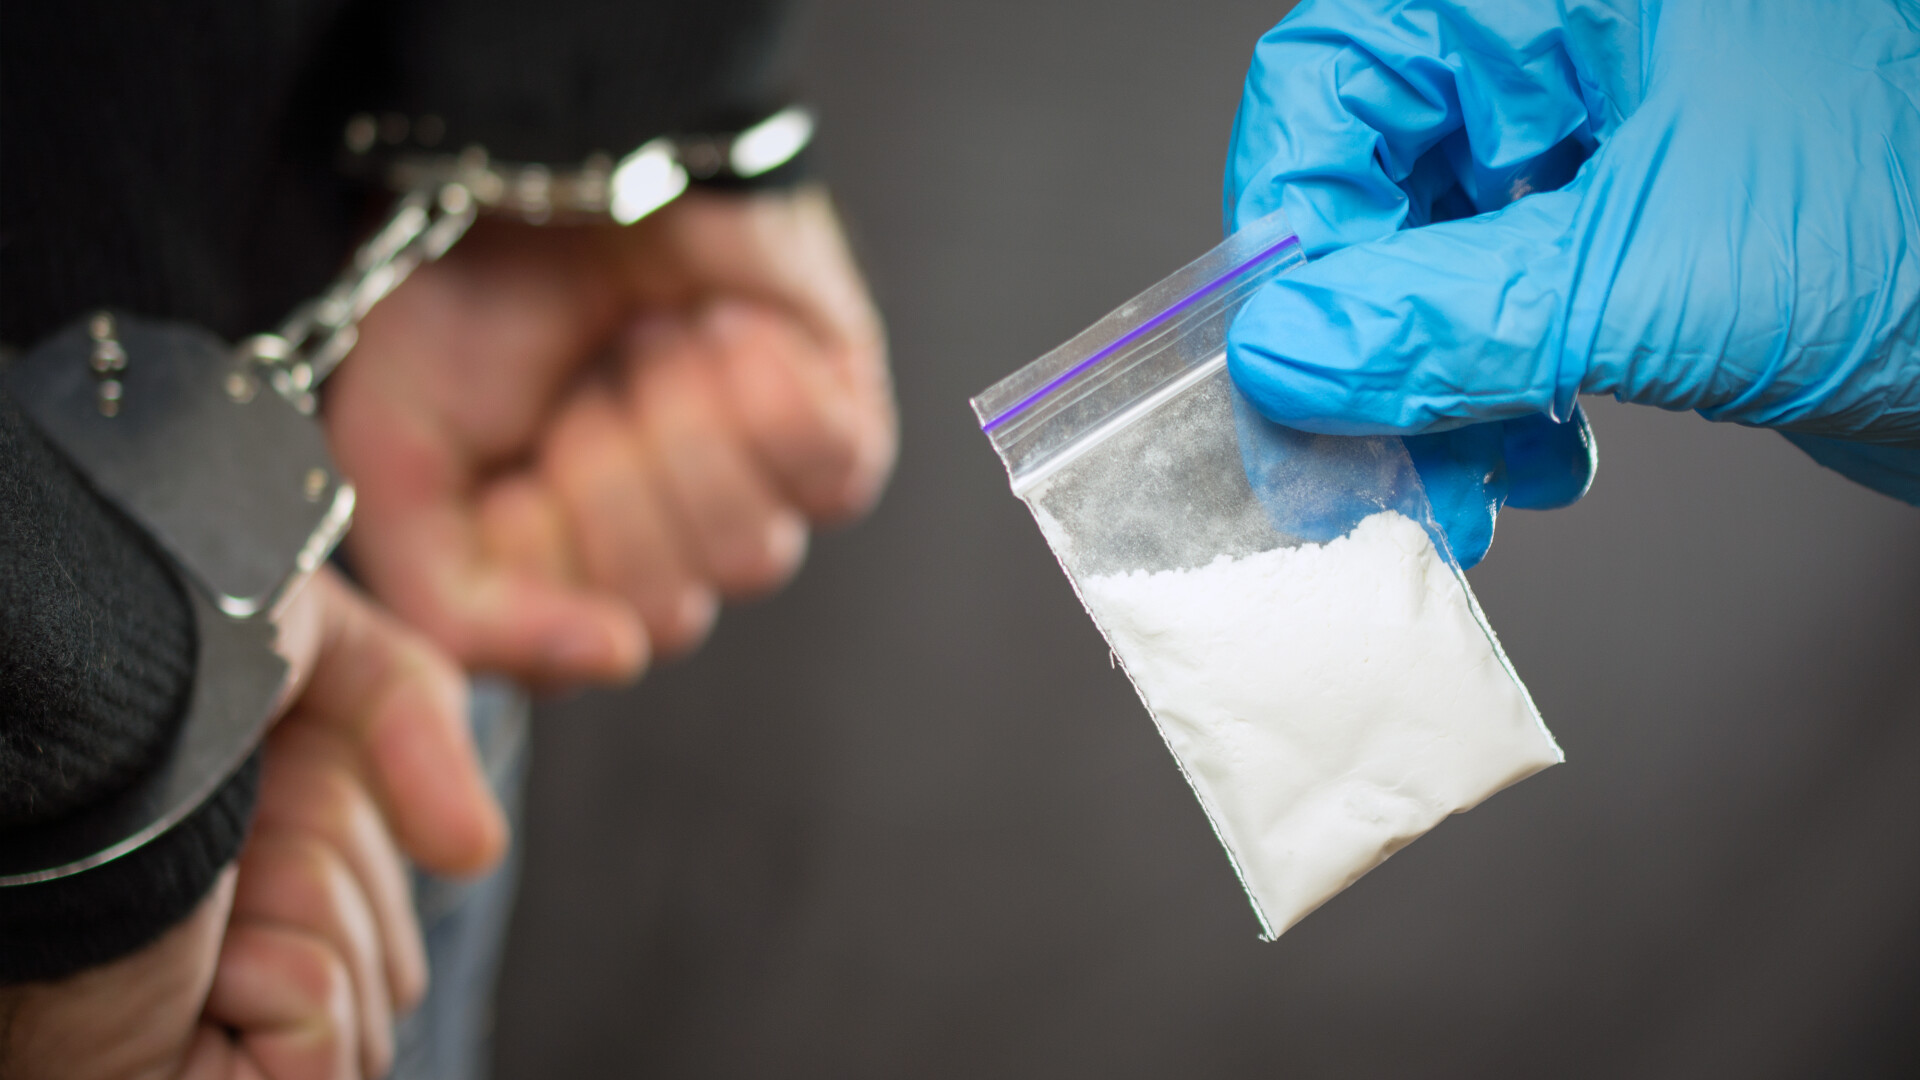 Român arestat în Marea Britanie pentru trafic de cocaină